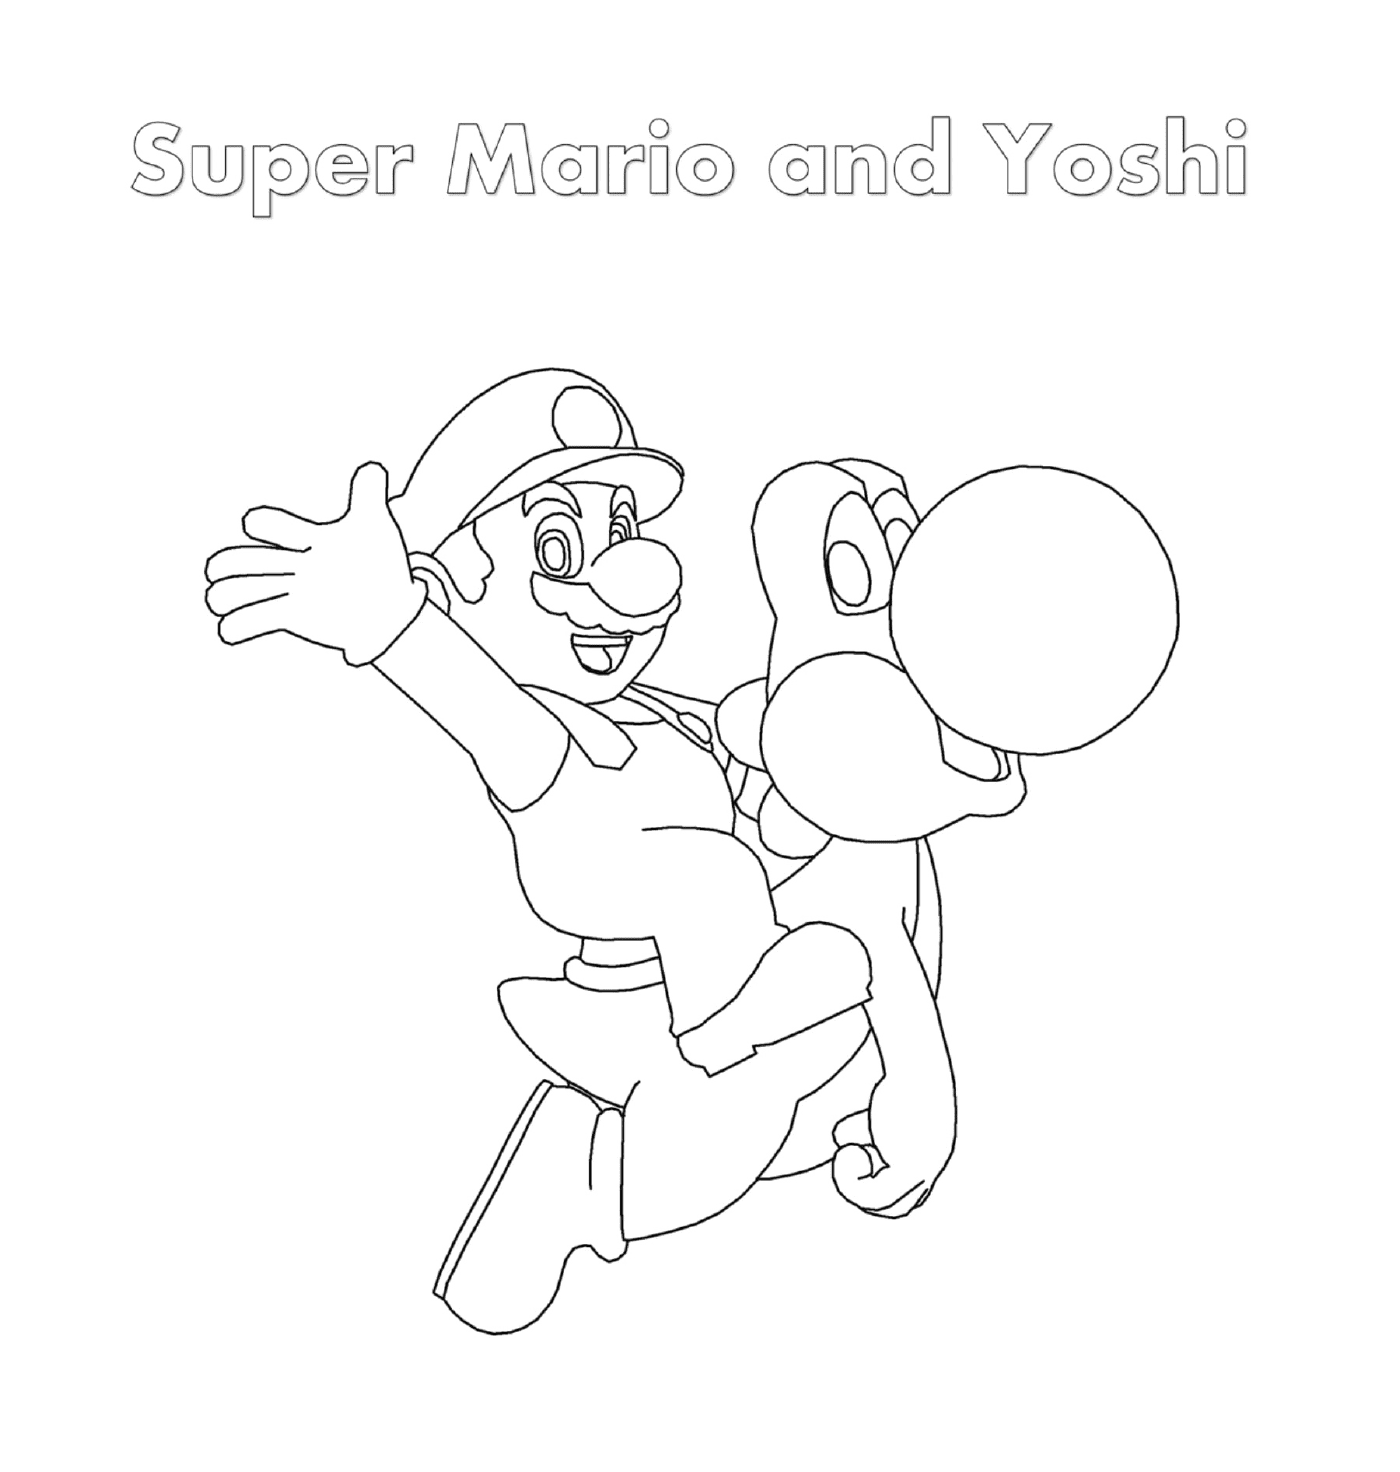   Super Mario et Yoshi avec une personne tenant une balle 